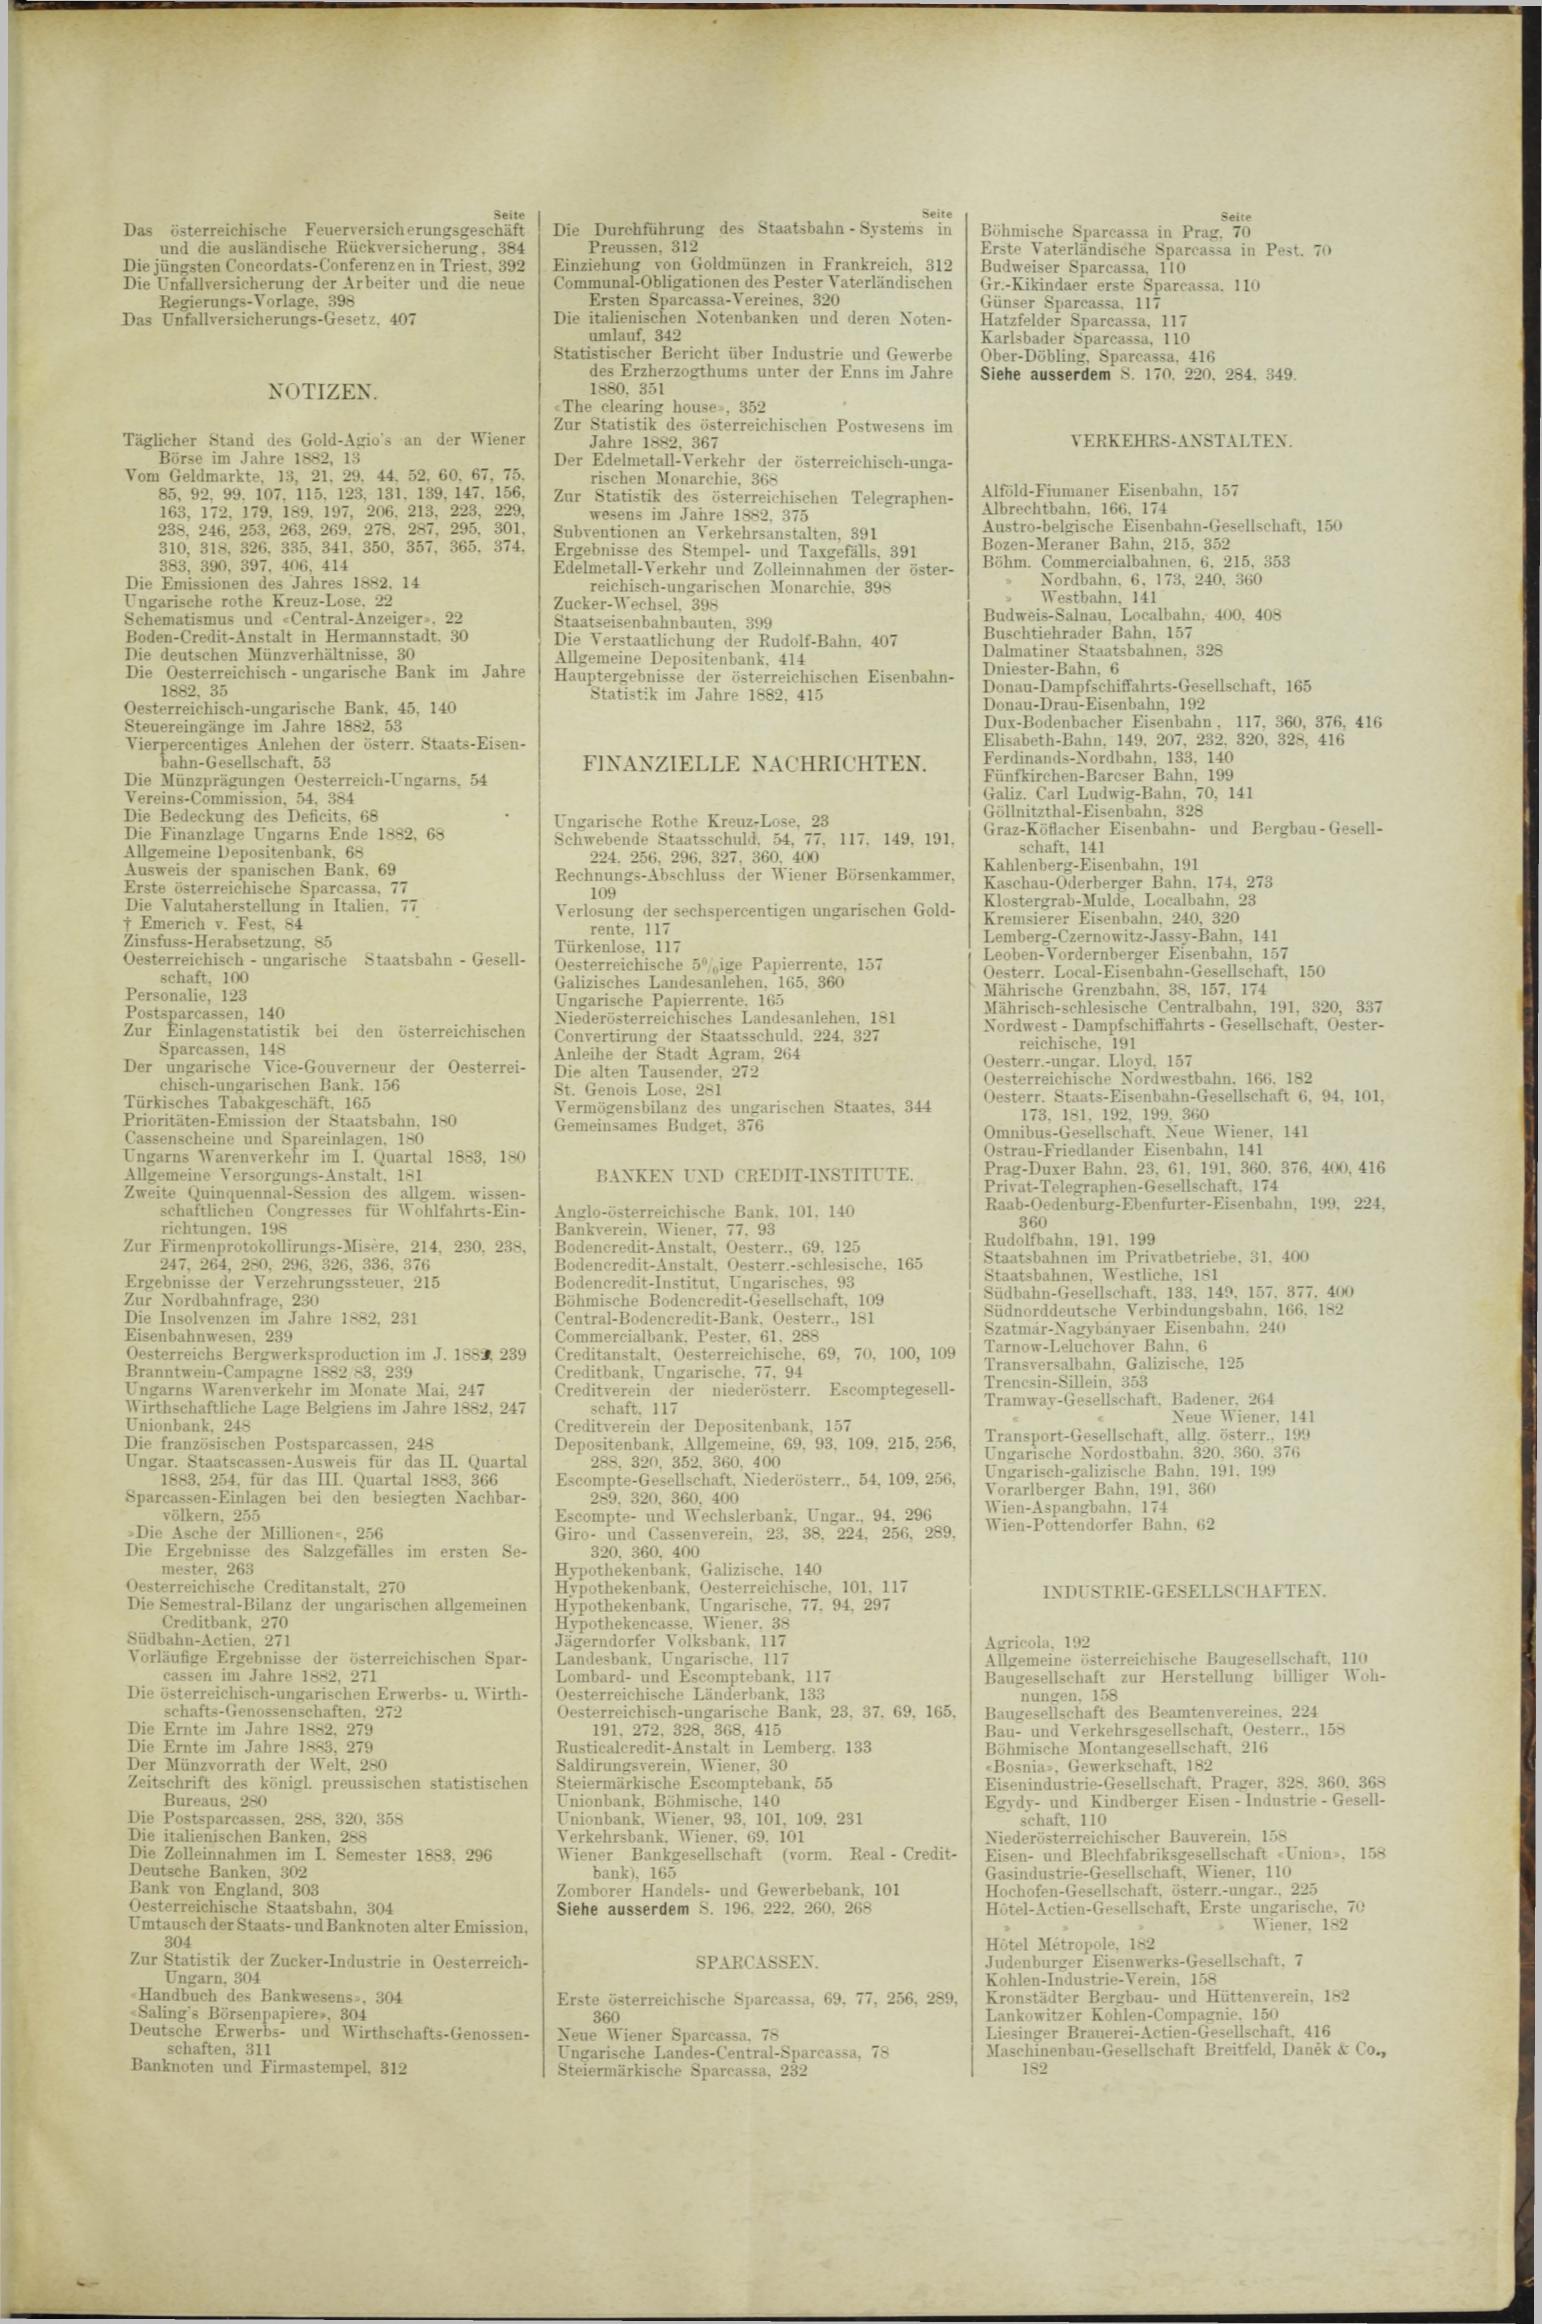 Der Tresor 13.09.1883 - Seite 11